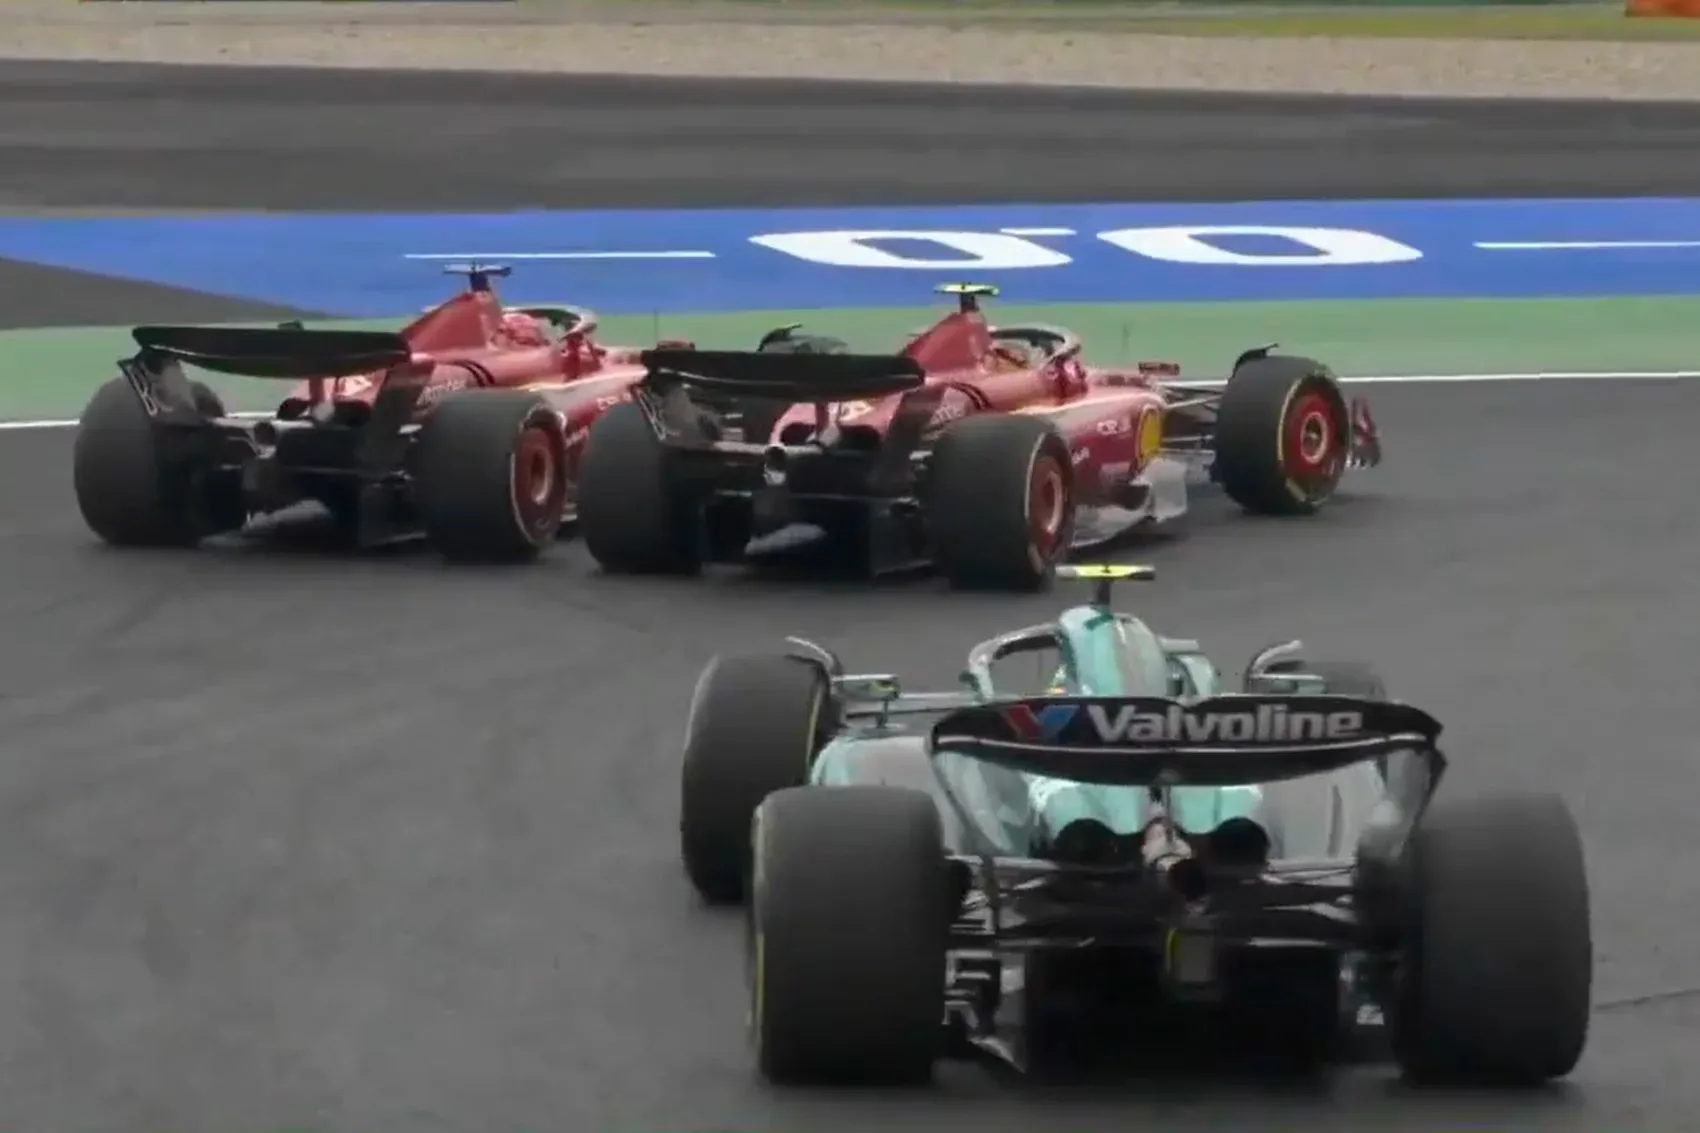 Leclerc aggódik a határidő túllépése miatt a Sainz által vezetett versenyen